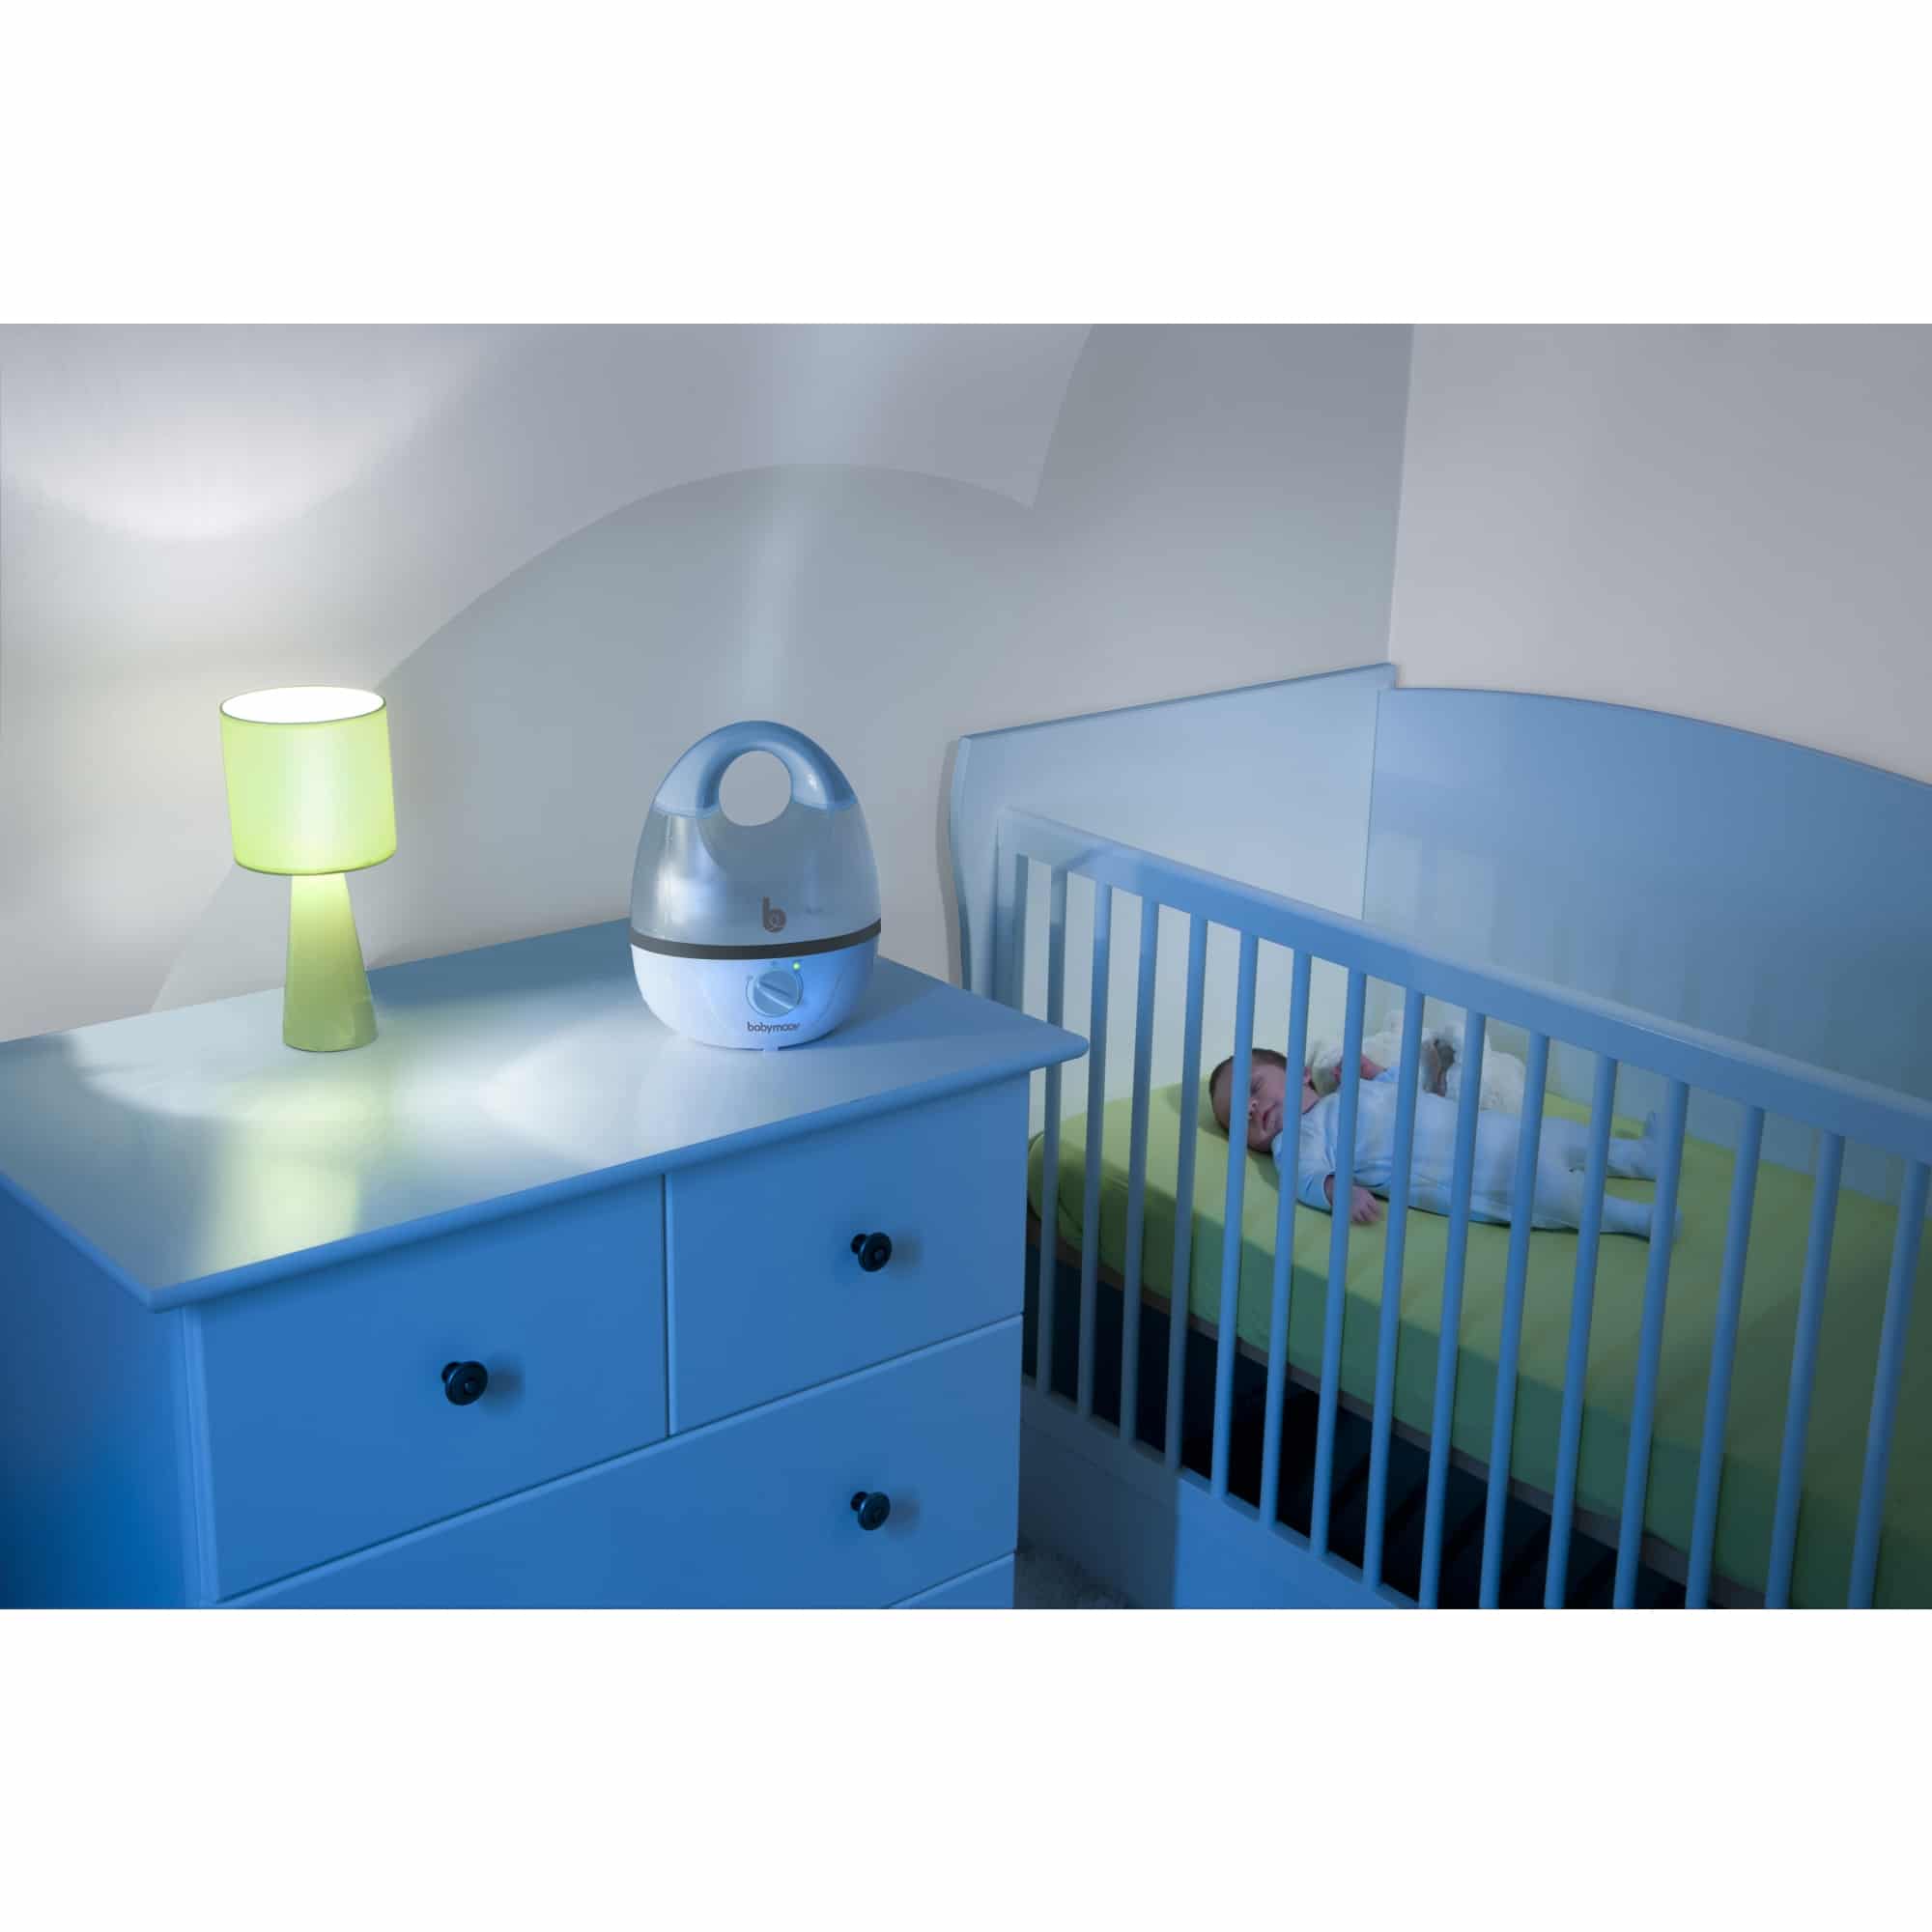 Humidificateur Chambre de bébé - Convient pour la chambre de bébé